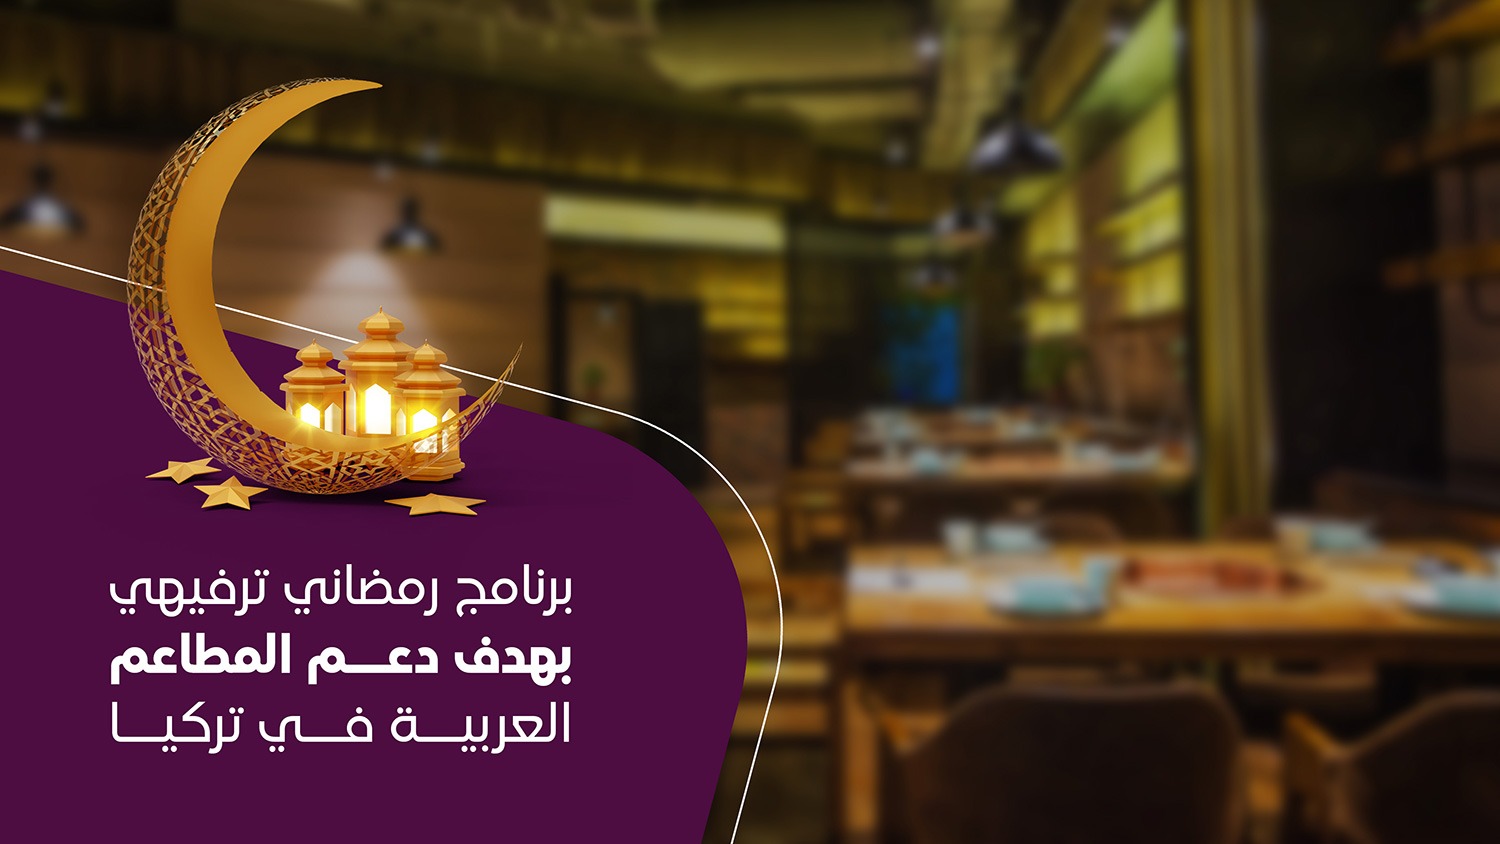 برنامج رمضاني ترفيهي بهدف دعم المطاعم العربية في تركيا